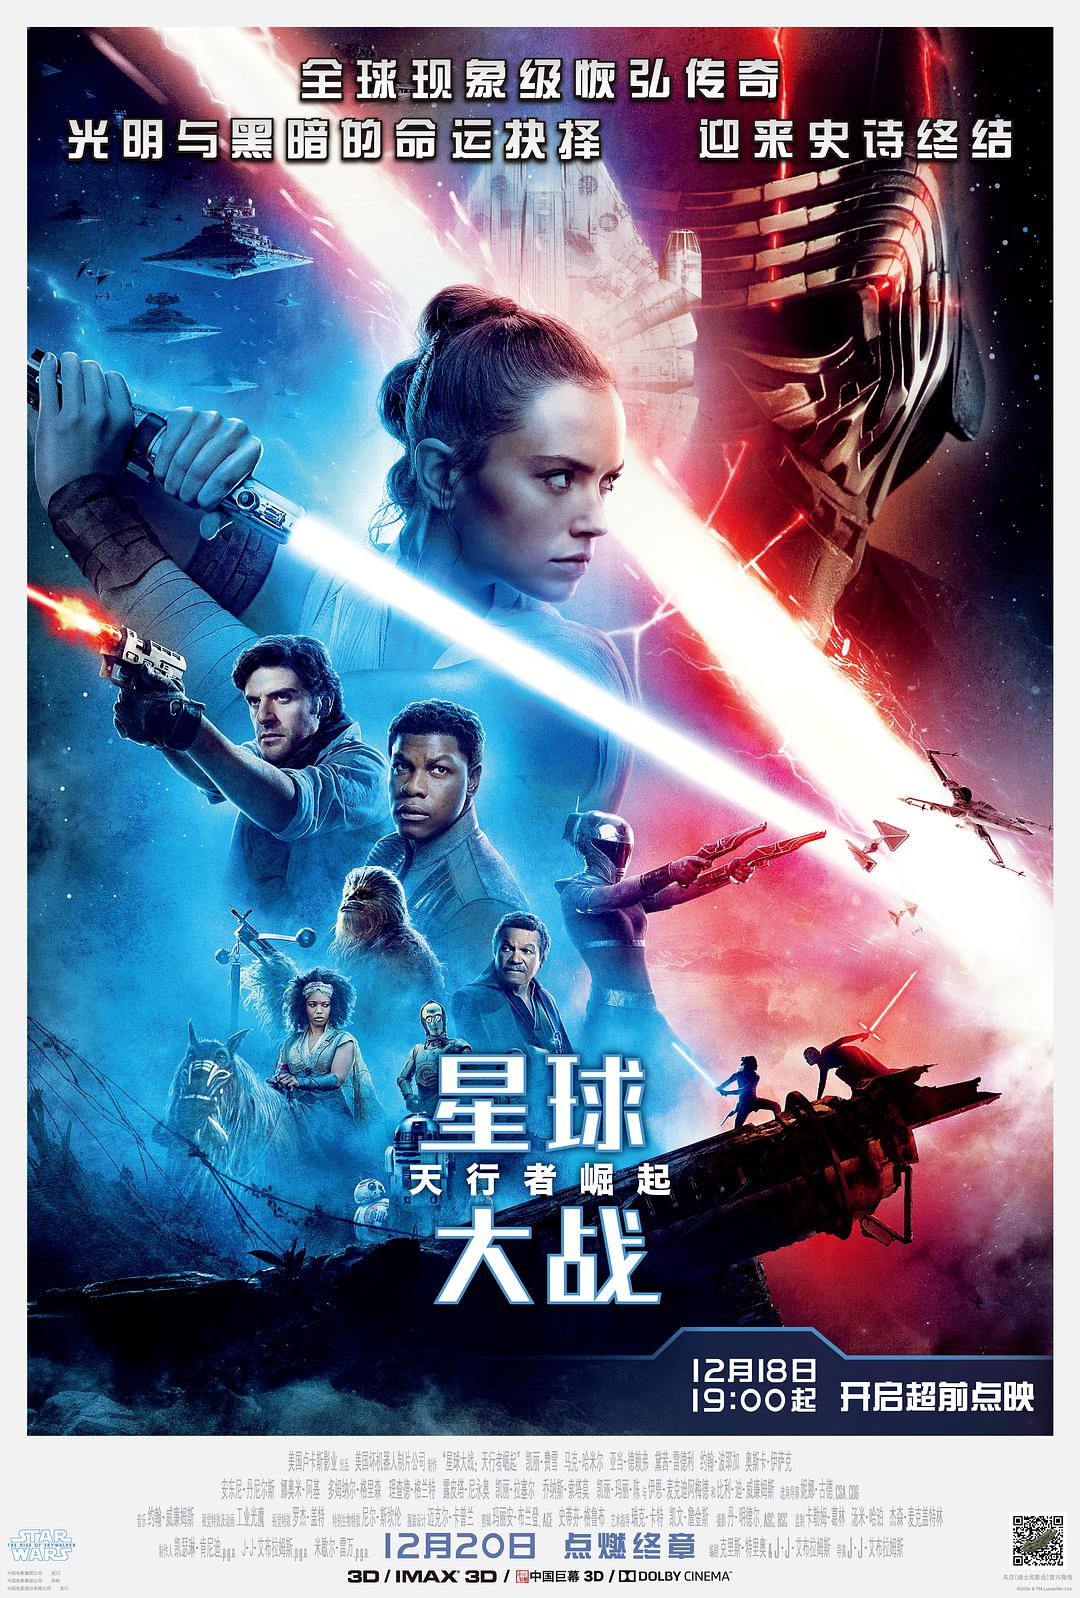 ս9: Star.Wars.Episode.IX.The.Rise.of.Skywalker.2019.1080p.BluRay.x264.DT-1.png